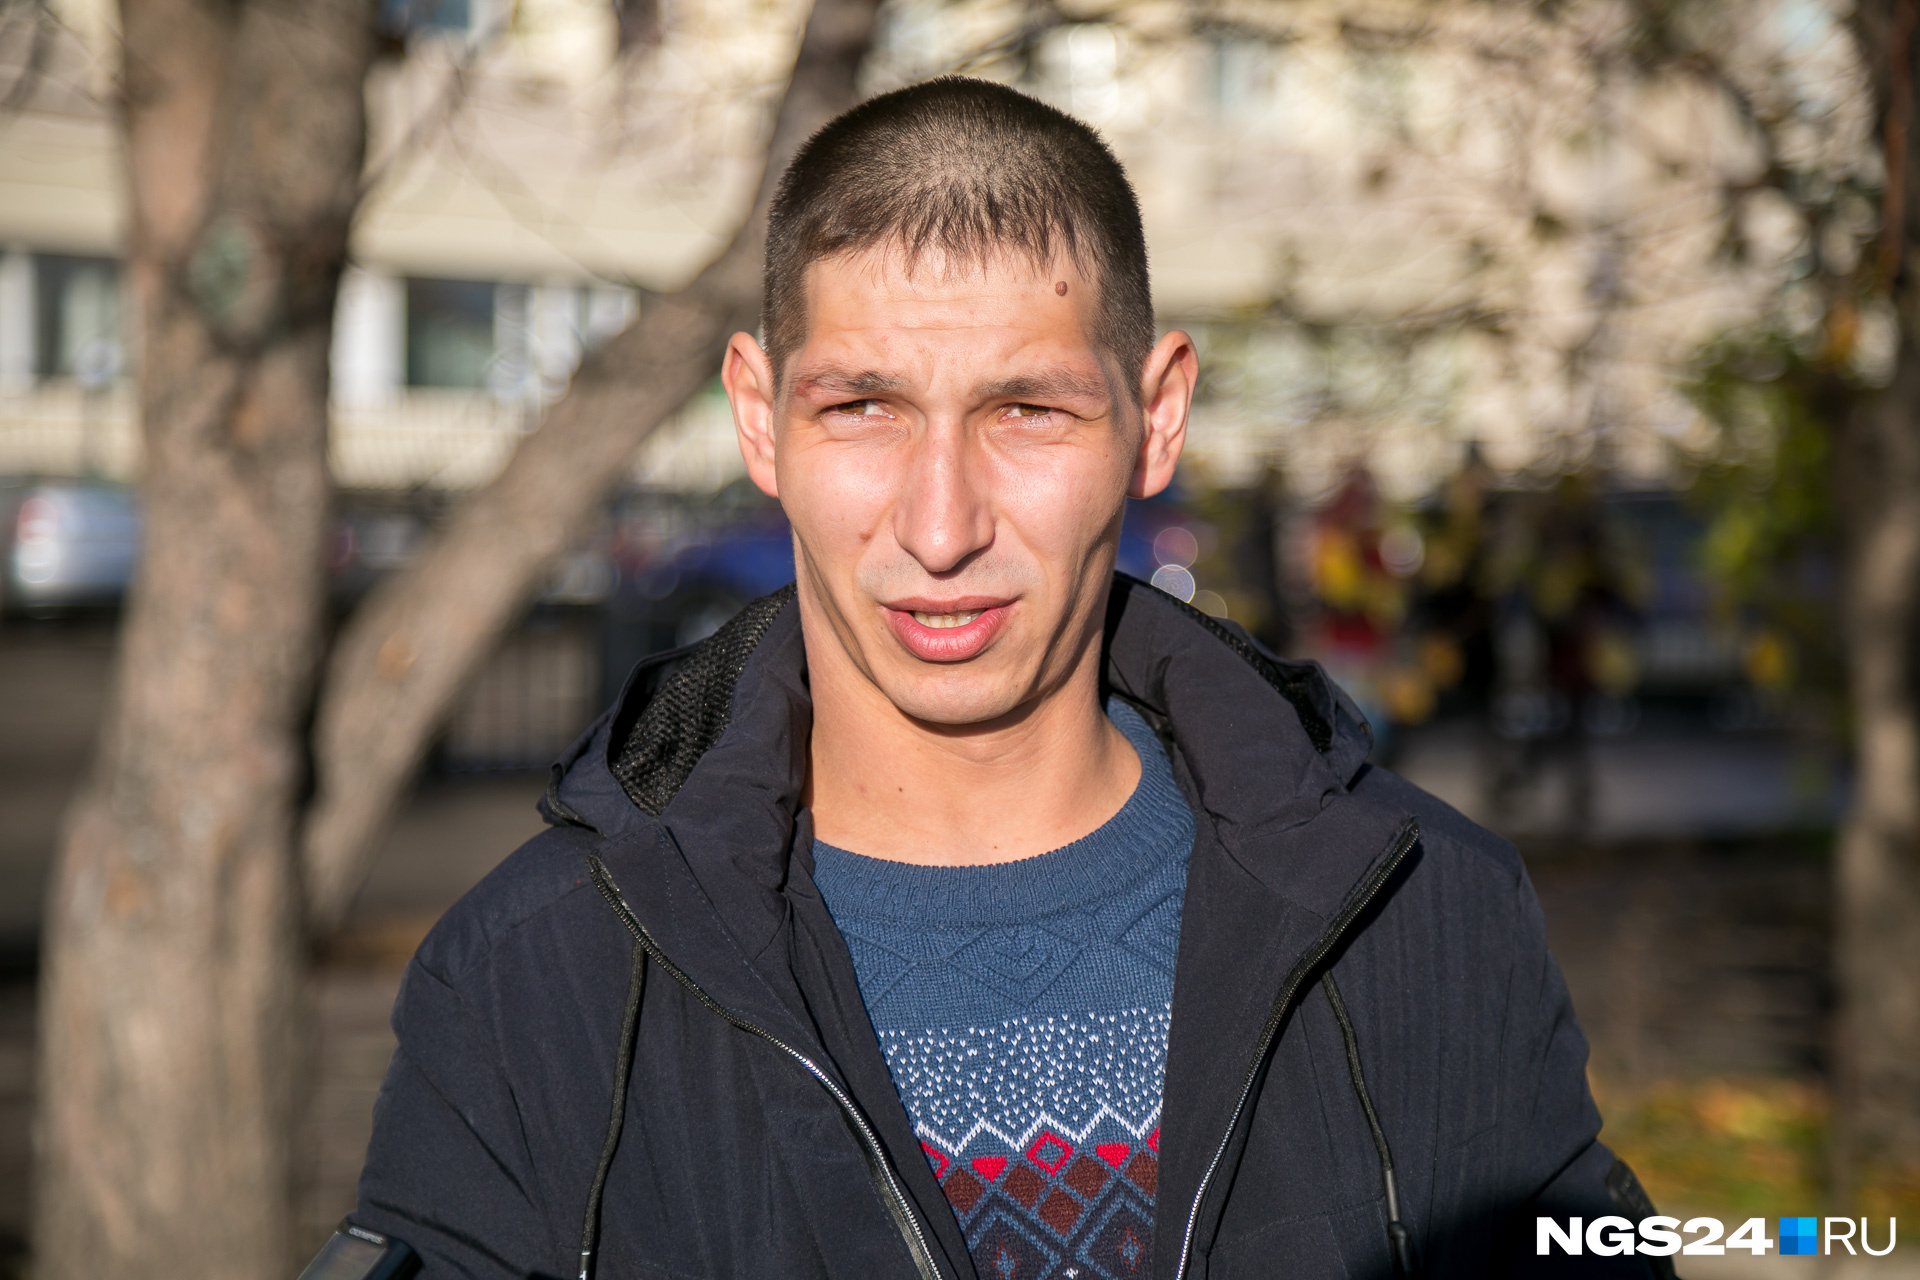 <b class="_">Константин, 23 года. Приехал в Красноярск после 2 лет работы в другом регионе</b><br>